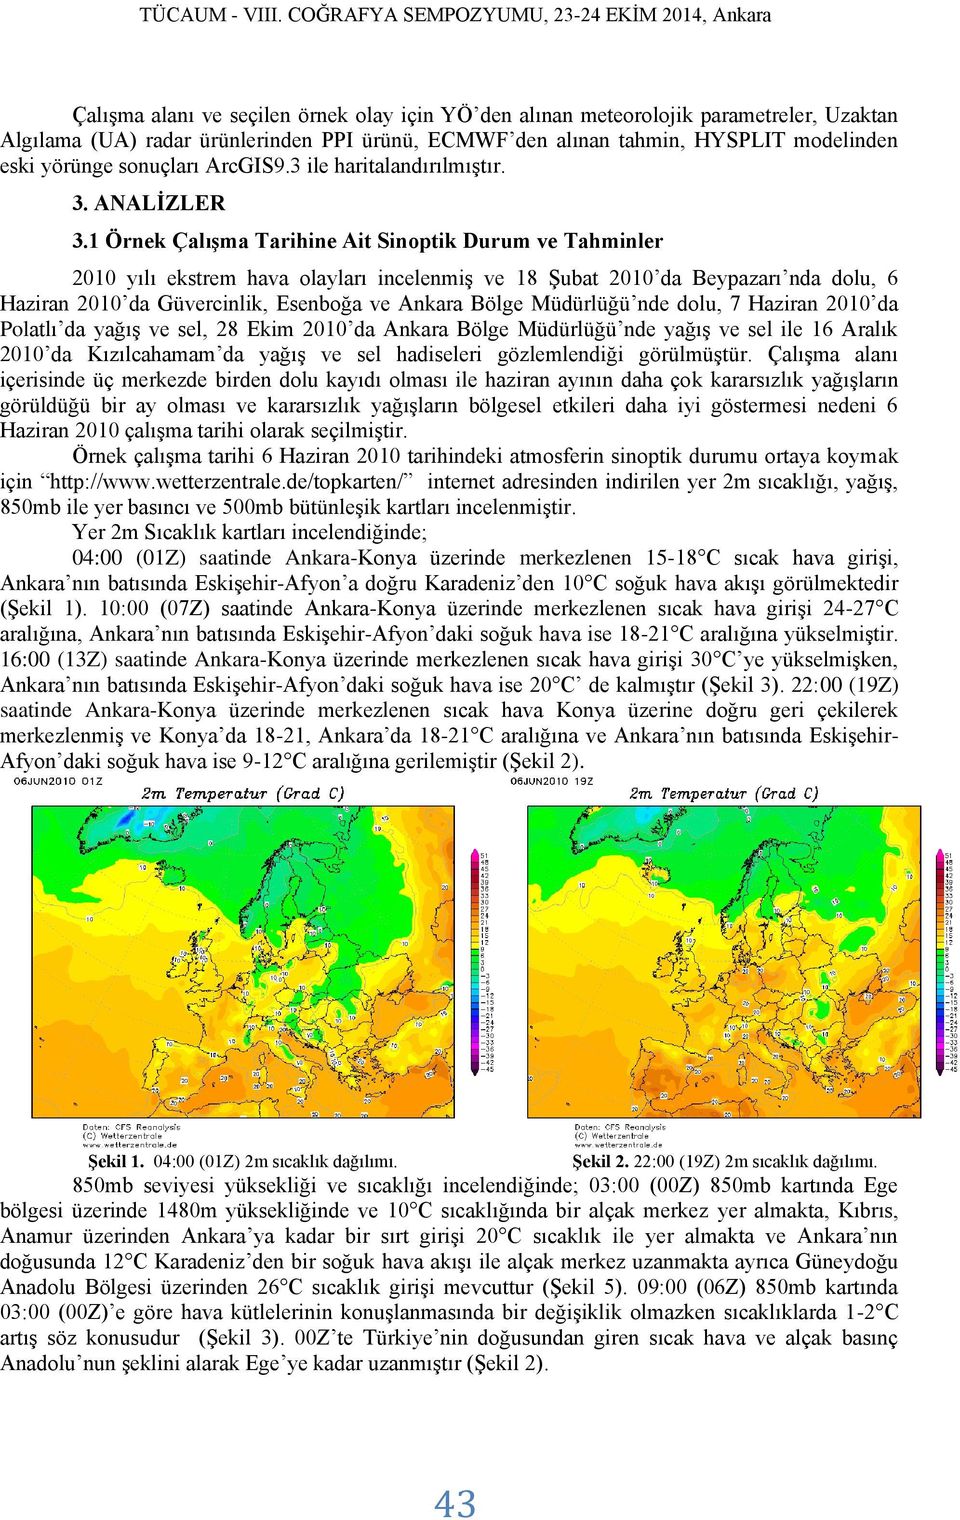 1 Örnek Çalışma Tarihine Ait Sinoptik Durum ve Tahminler 2010 yılı ekstrem hava olayları incelenmiş ve 18 Şubat 2010 da Beypazarı nda dolu, 6 Haziran 2010 da Güvercinlik, Esenboğa ve Ankara Bölge